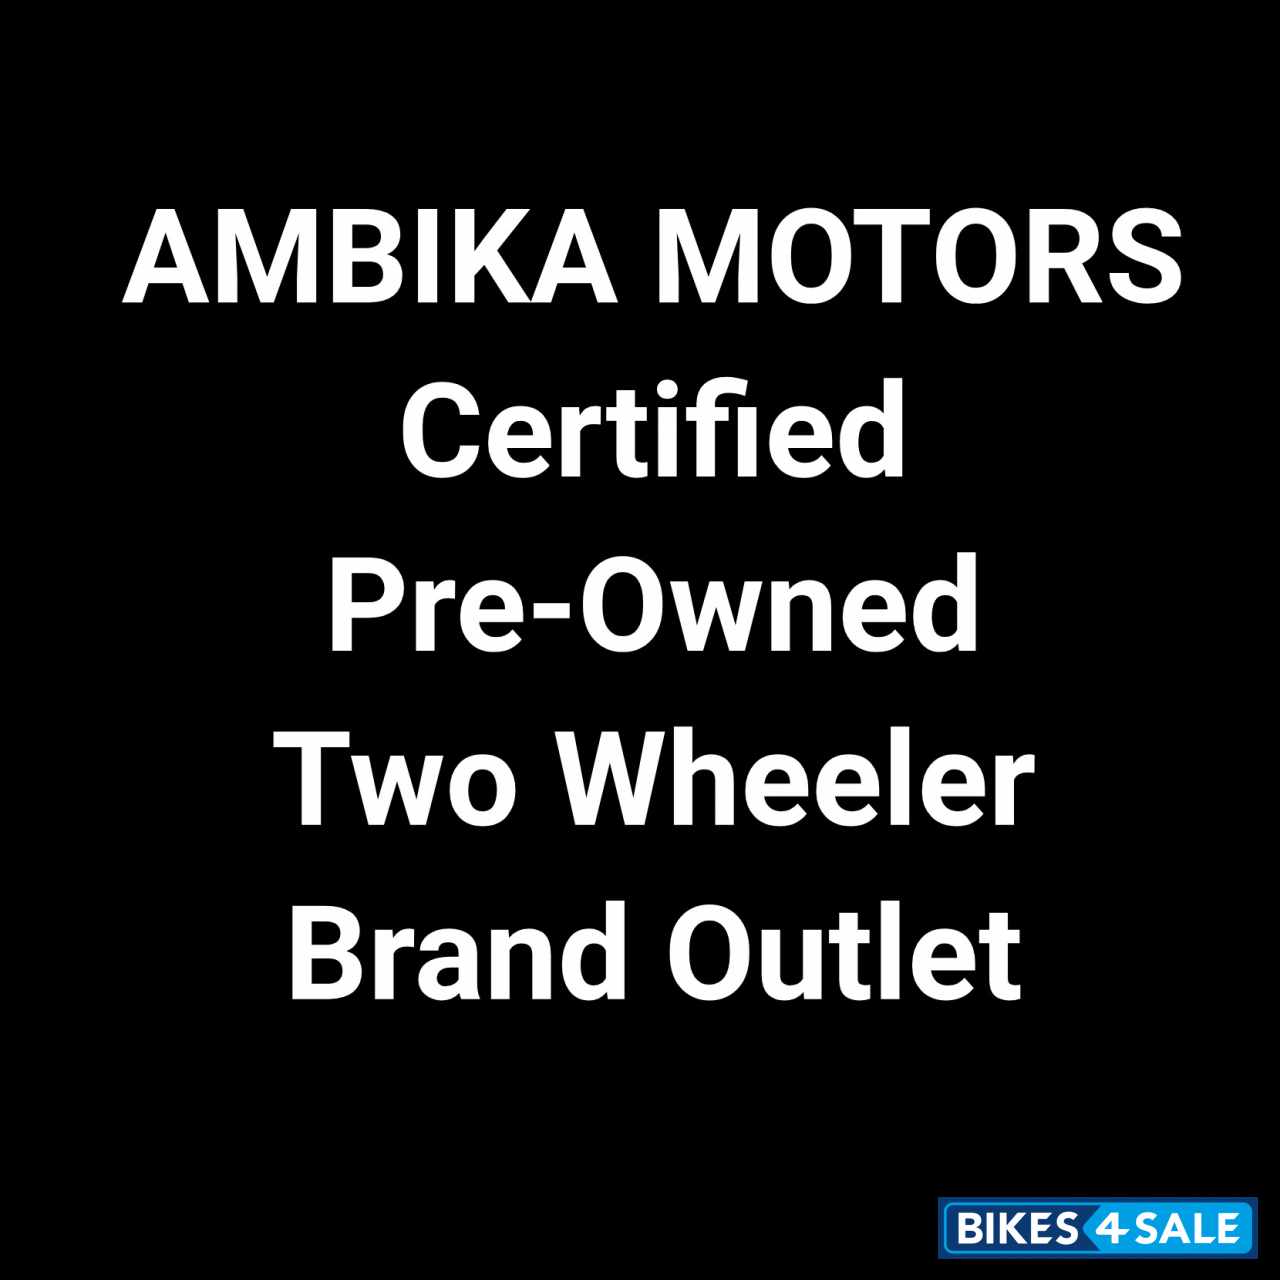 AMBIKA MOTORS